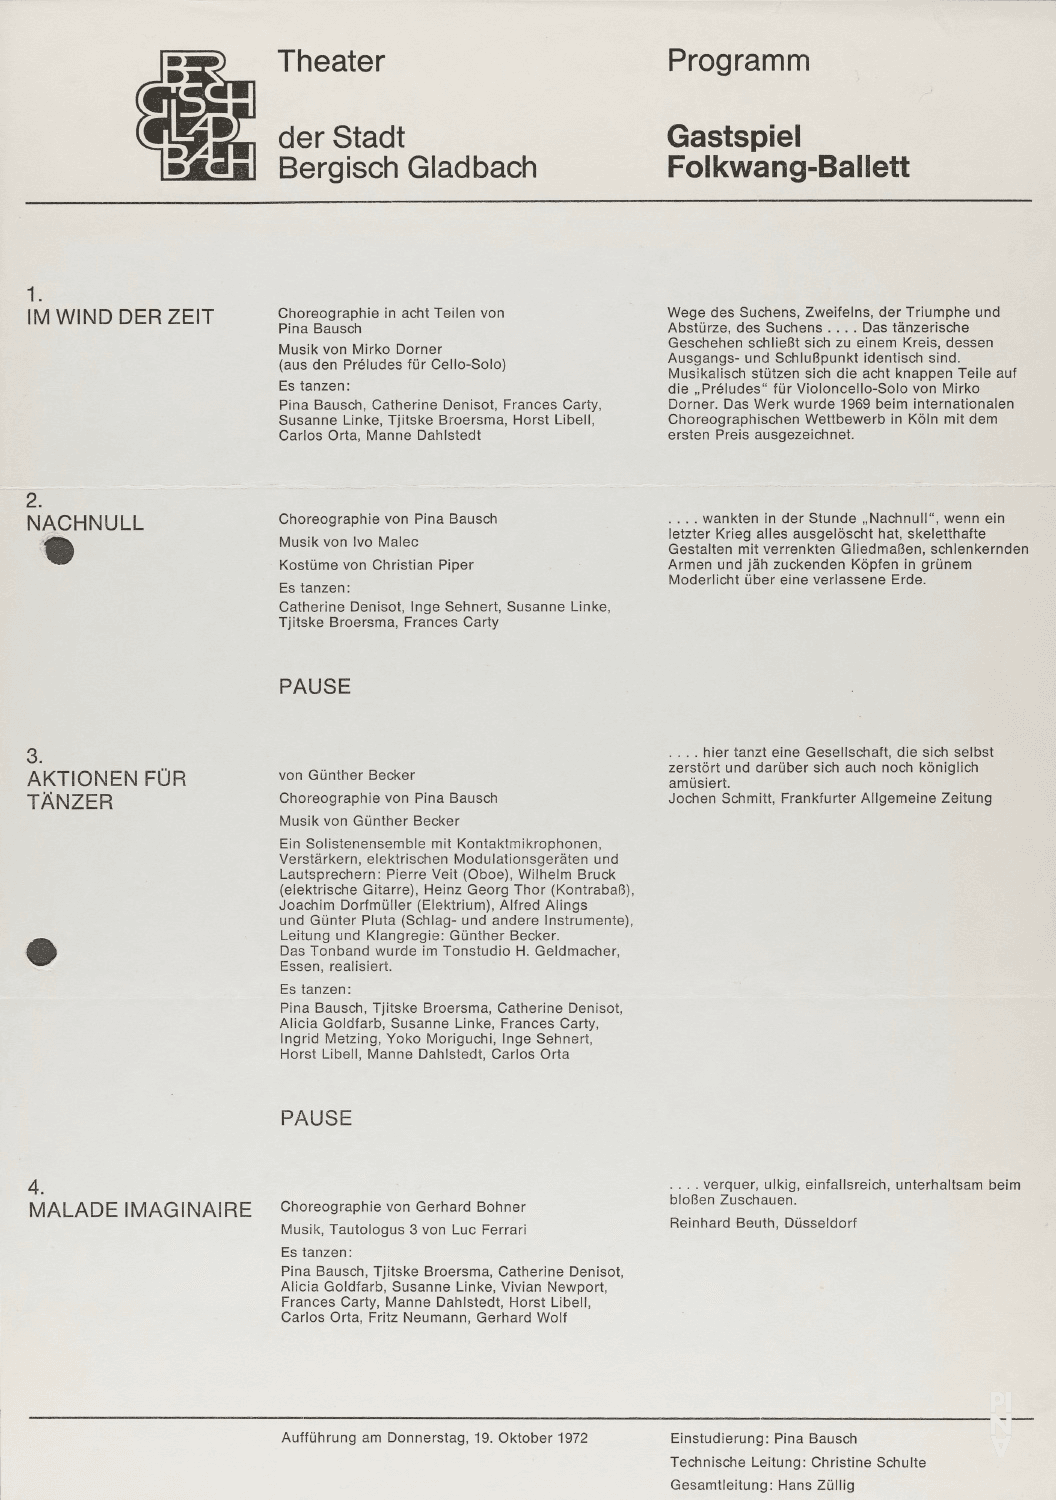 Evening leaflet for “Nachnull (After Zero)”, “Aktionen für Tänzer” and “Im Wind der Zeit” by Pina Bausch with Folkwangballett and “Malade Imaginaire” by Gerhard Bohner with Folkwangballett in in Bergisch Gladbach, Oct. 19, 1972